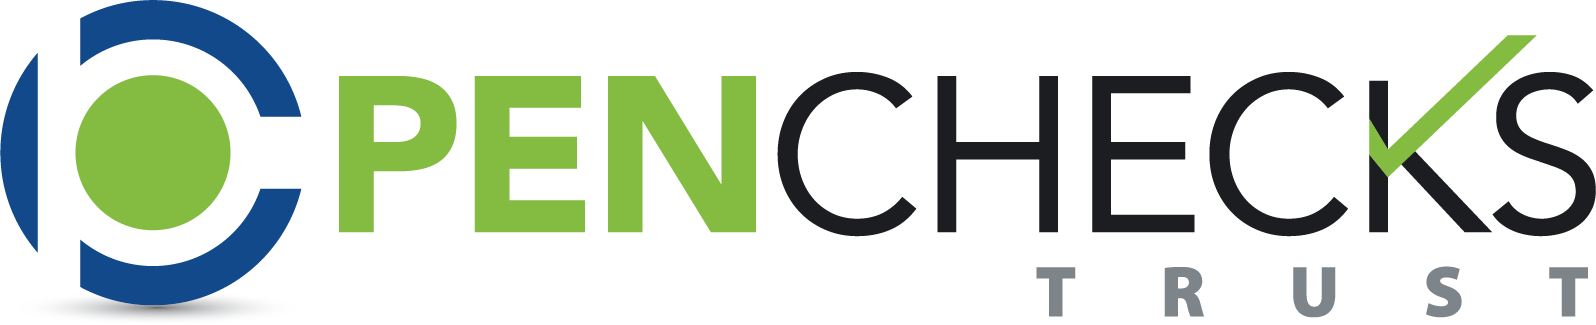 PenChecks, Inc. logo